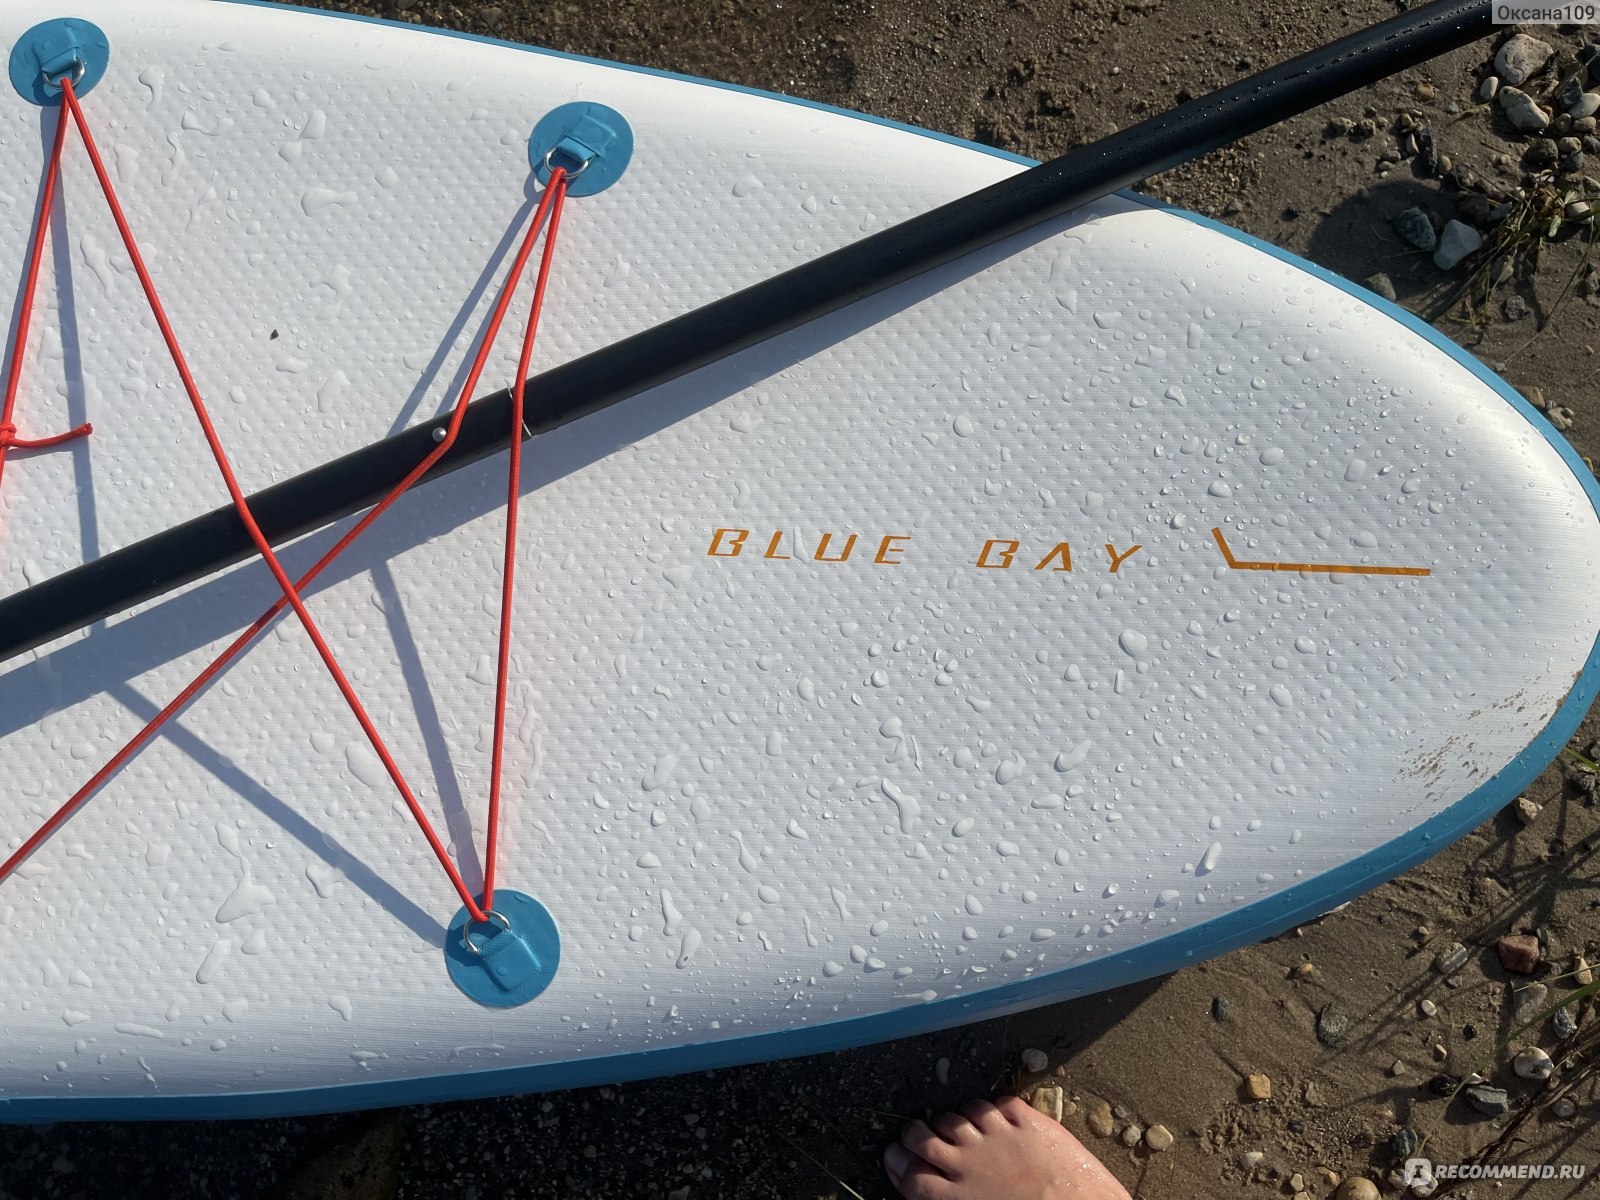 Sup board (надувная доска для серфинга с веслом) Blue bay  фото